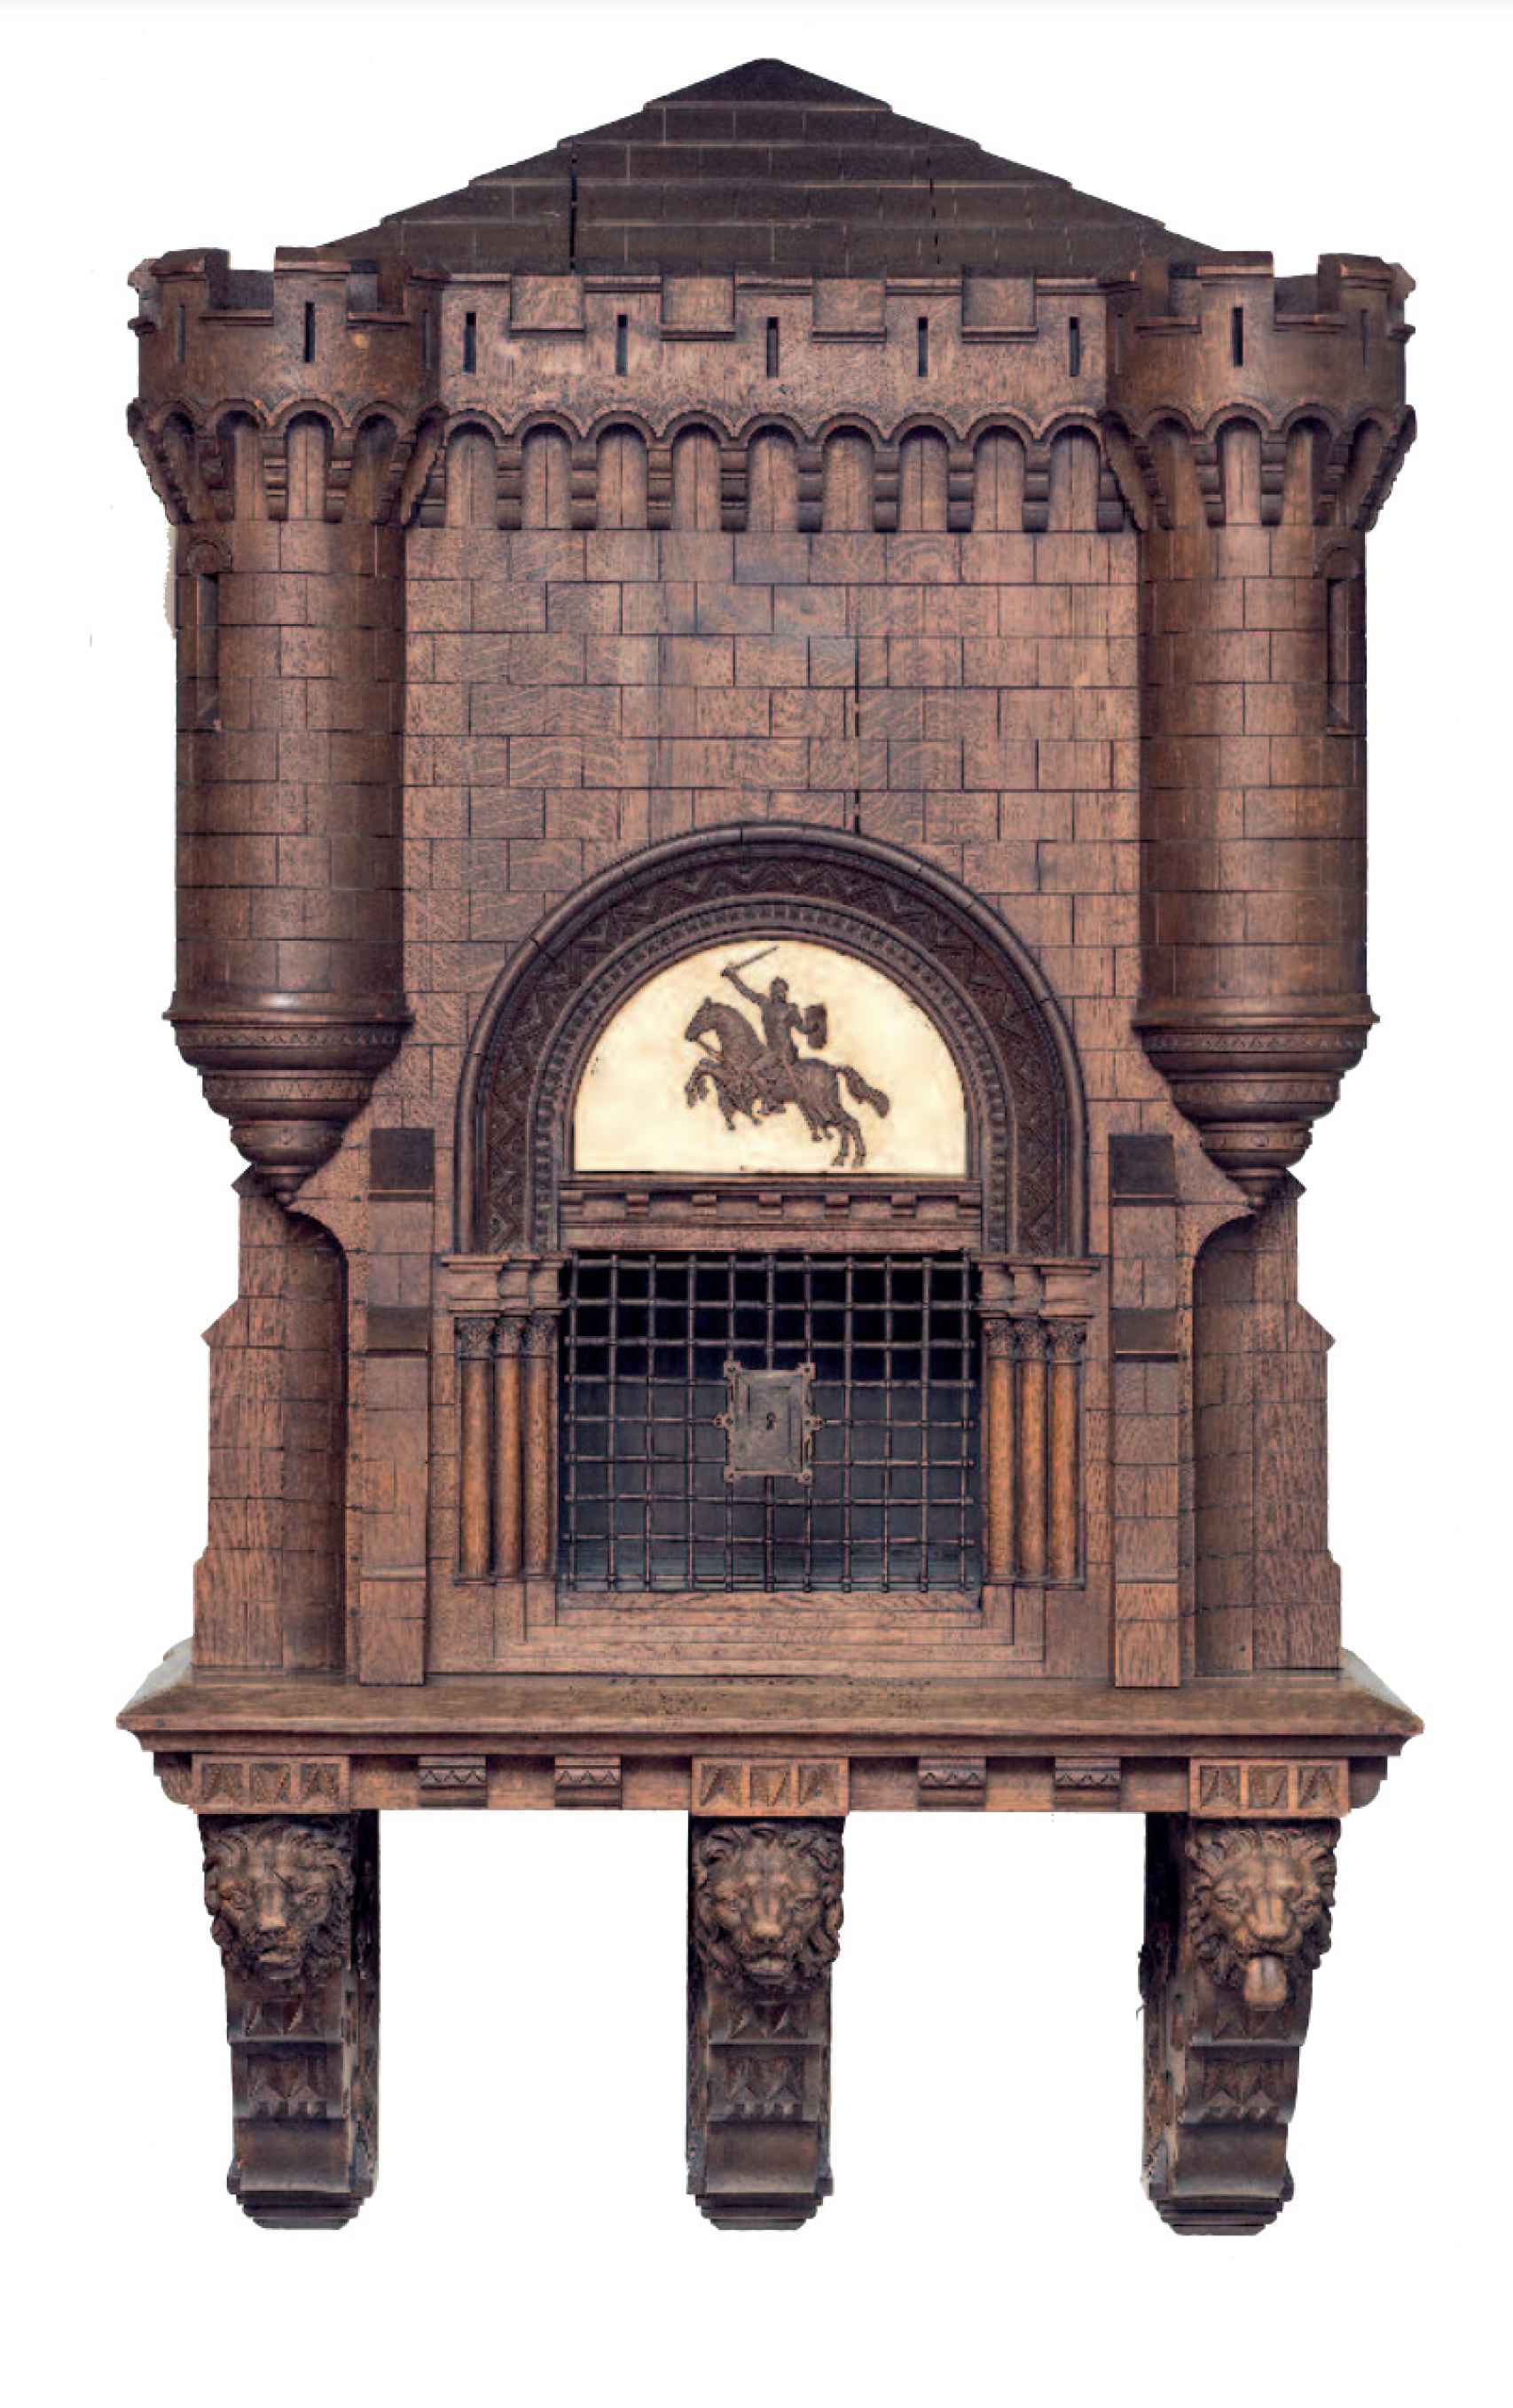 Mueble-castillete perteneciente a Pidal donde se guardaba uno de los códices originales del cantar